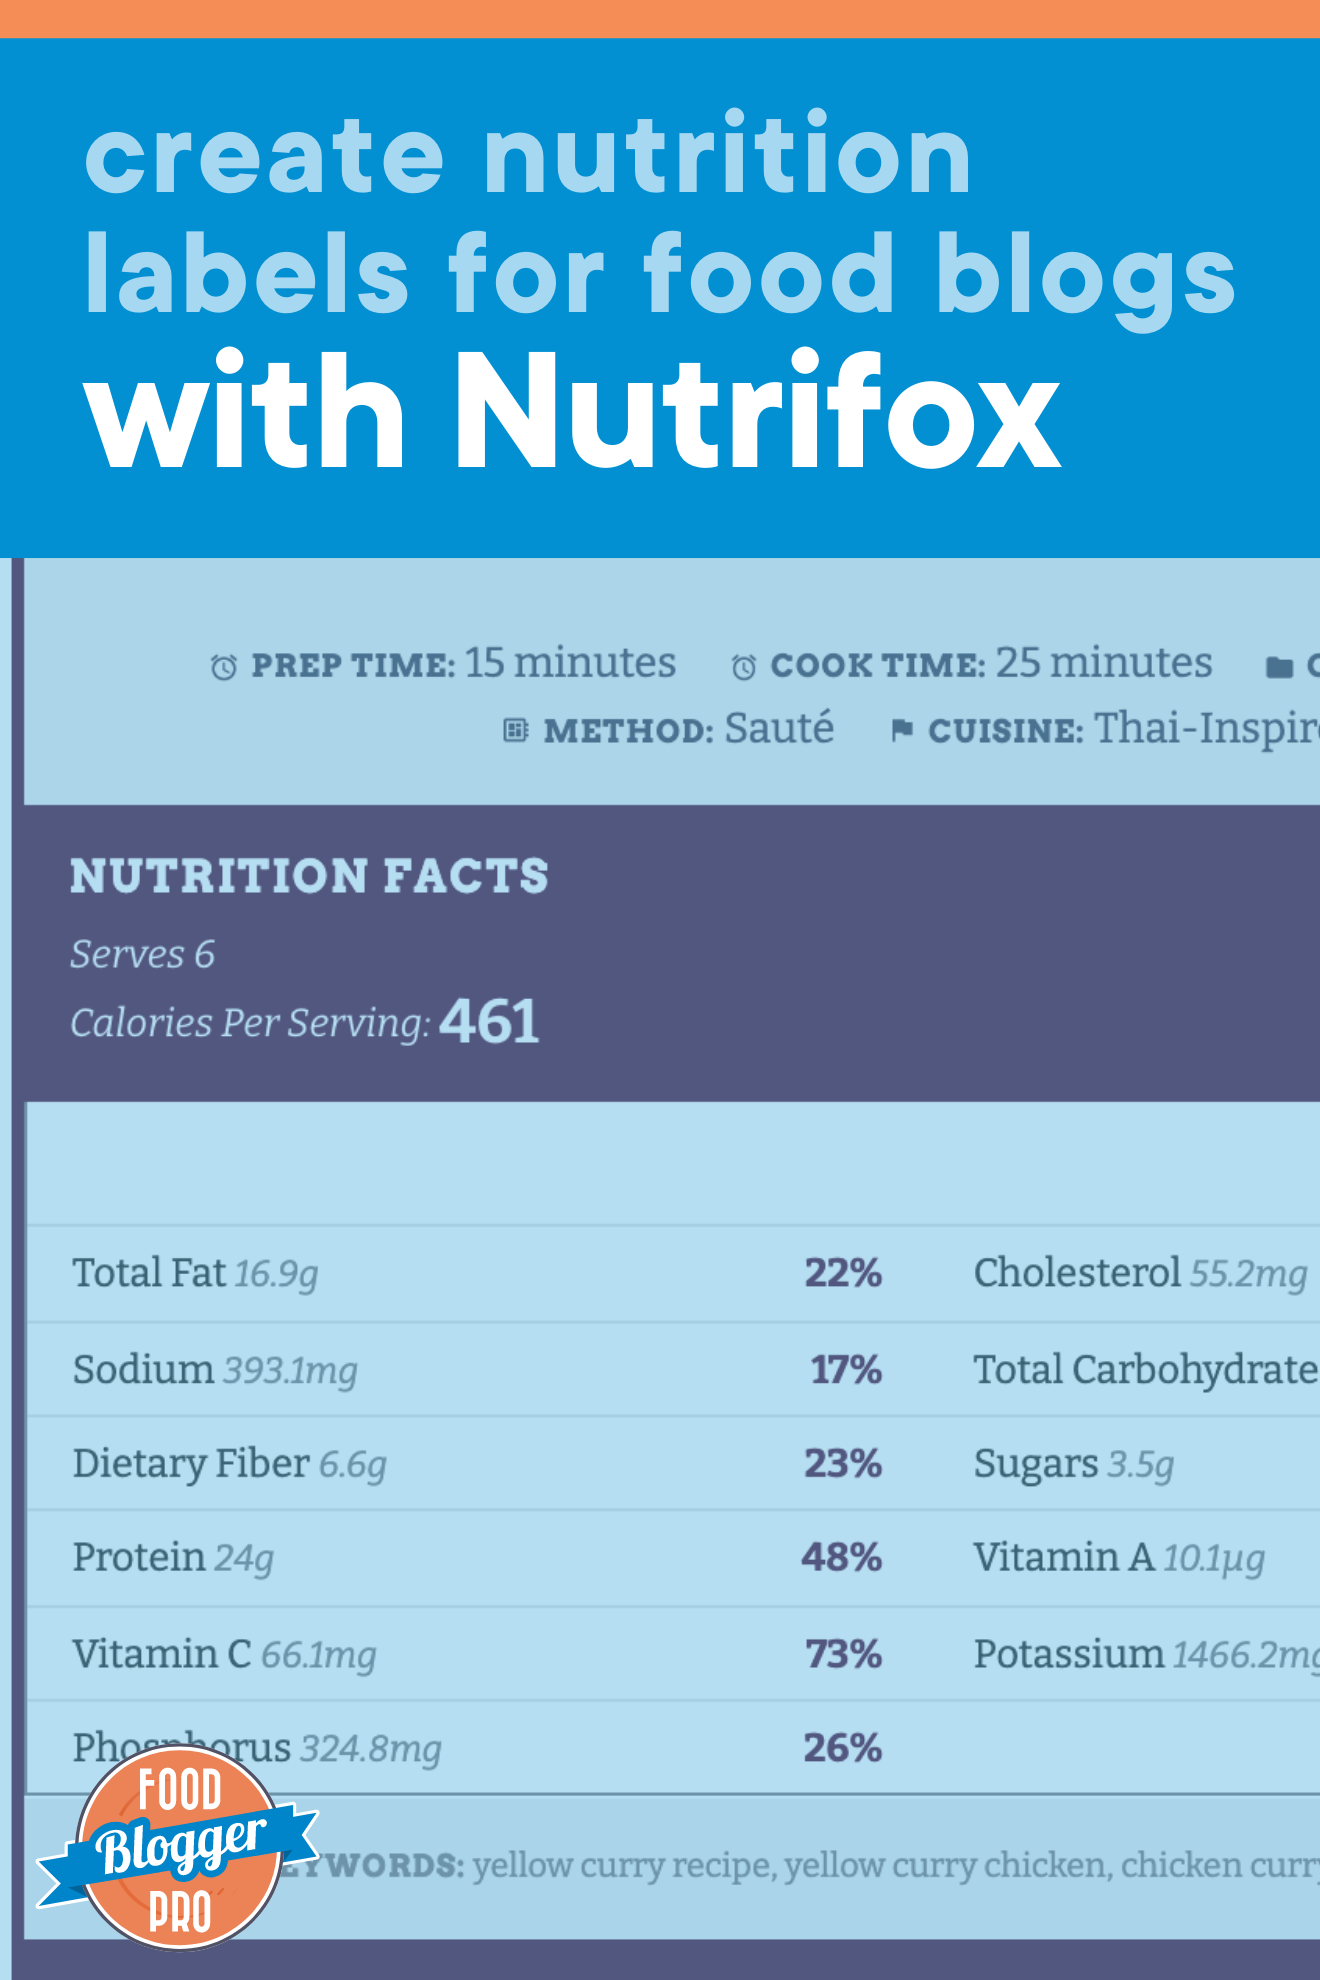 aNutrifox营养标签食品博客和文章标题“Create营养标签带Nutrifox